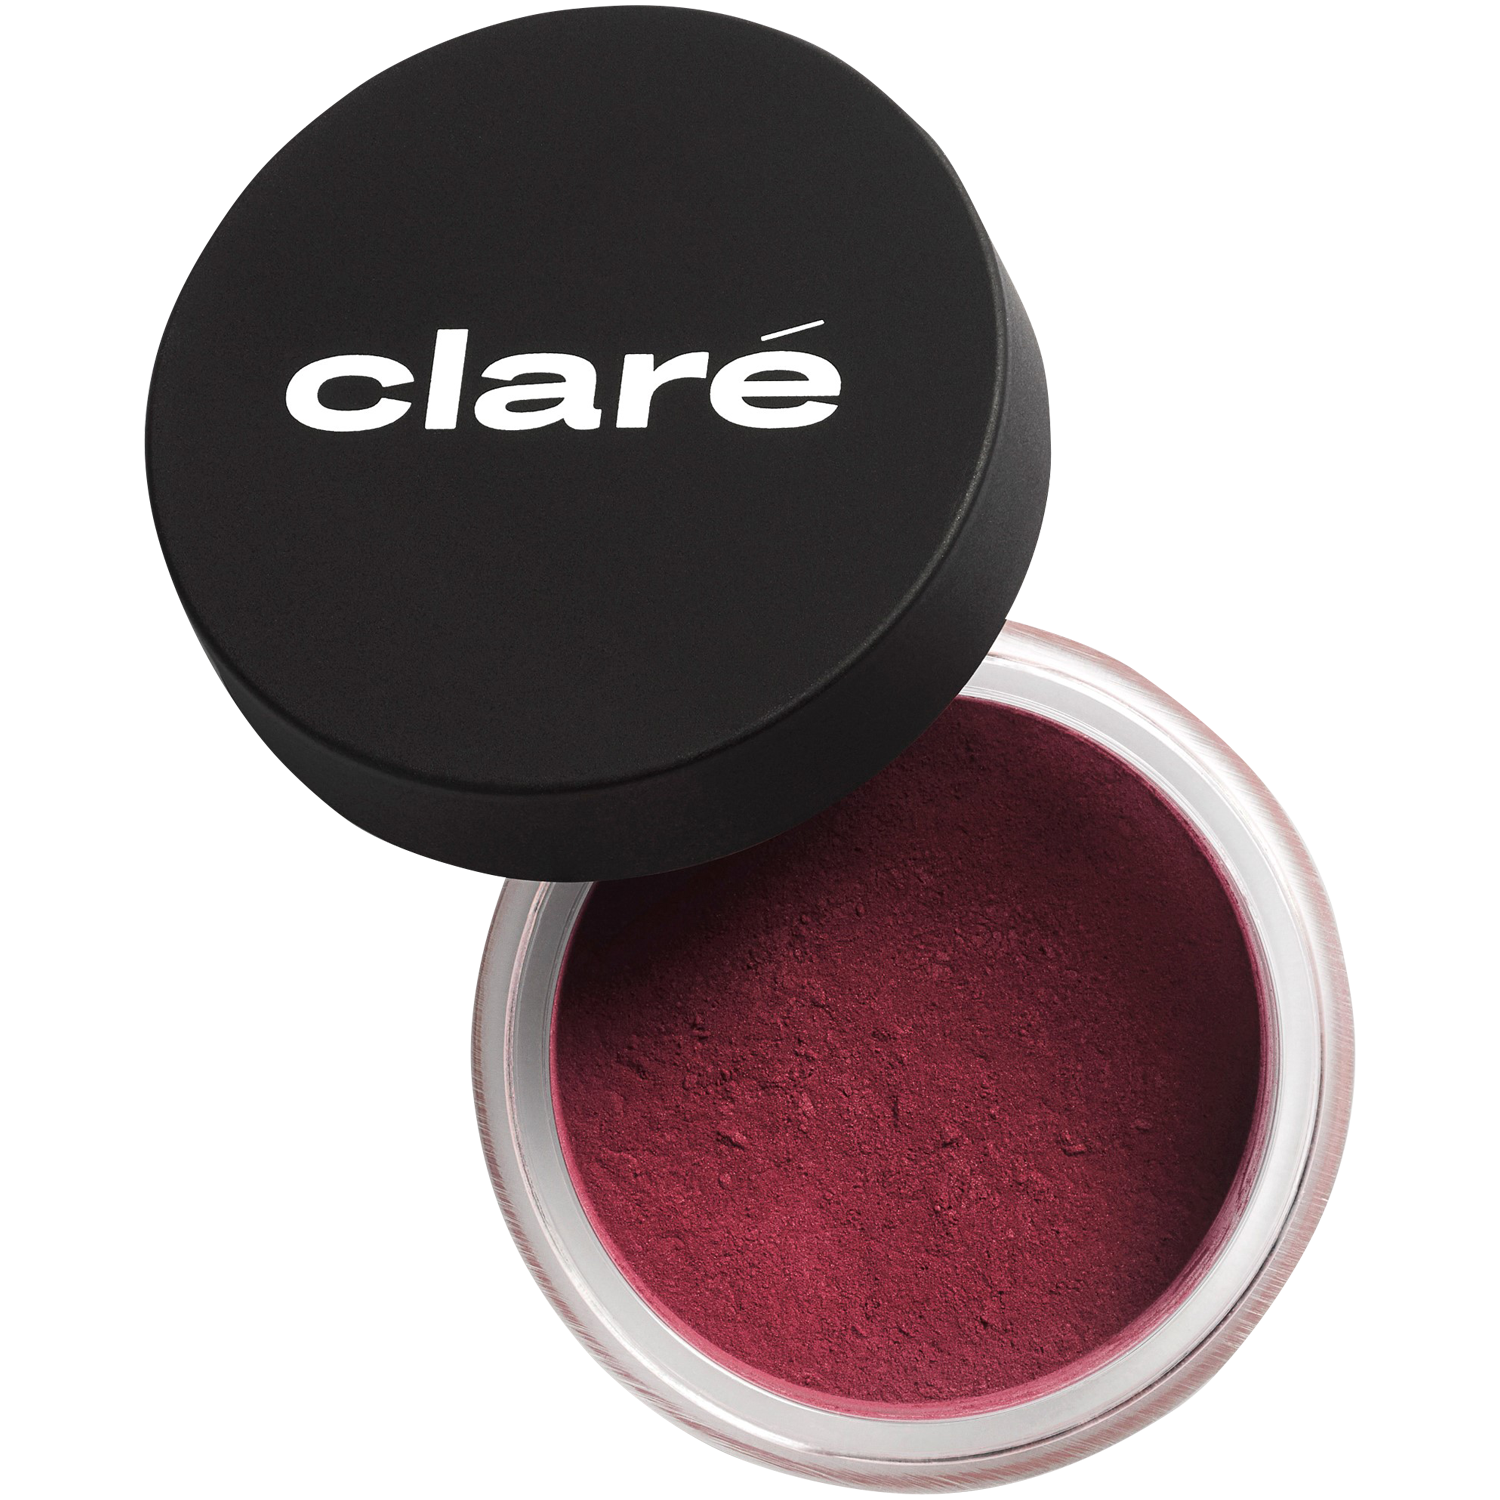 Матовые тени для век вишнево-коричневые 910 Claré Clare Makeup, 1,2 гр